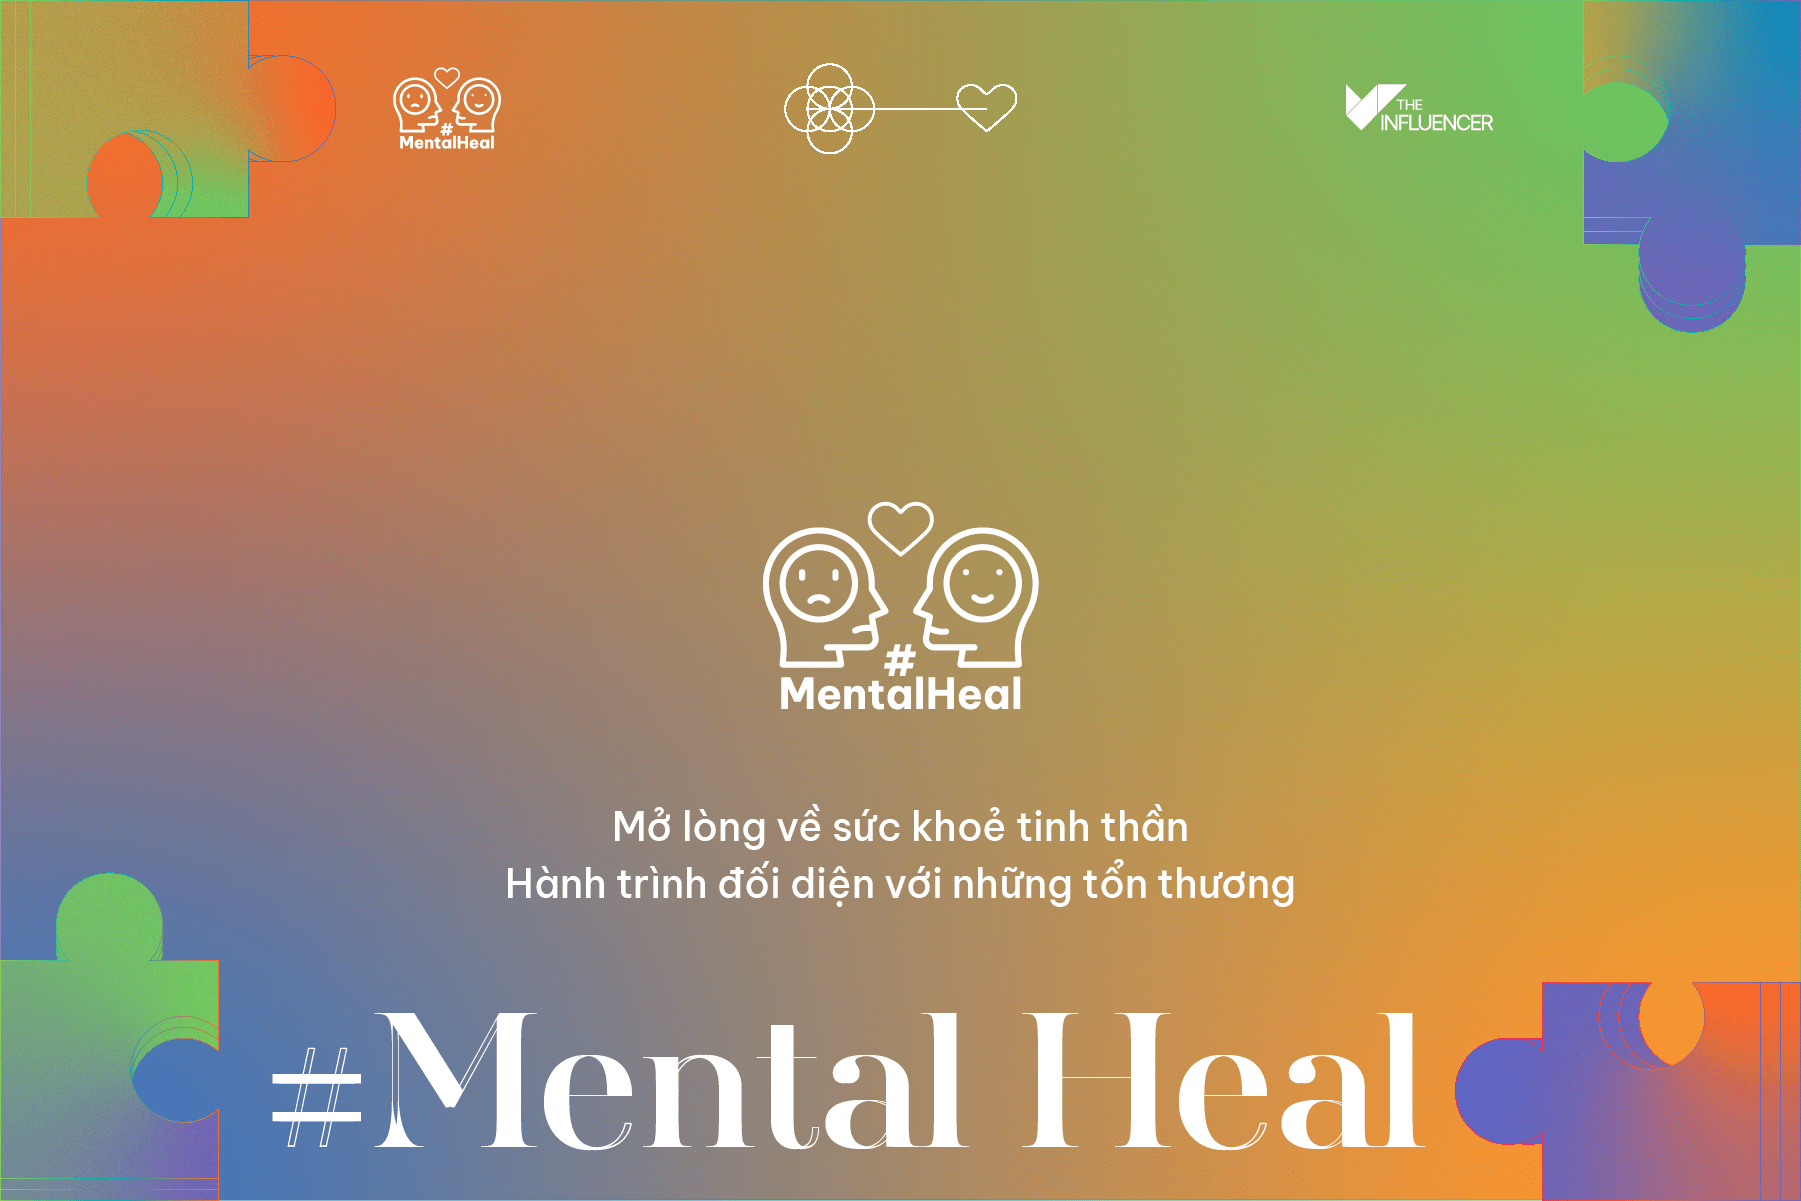 Chiến dịch #MentalHeal - Nơi các chuyên gia/ influencer cùng mở lòng chia sẻ về sức khỏe tinh thần